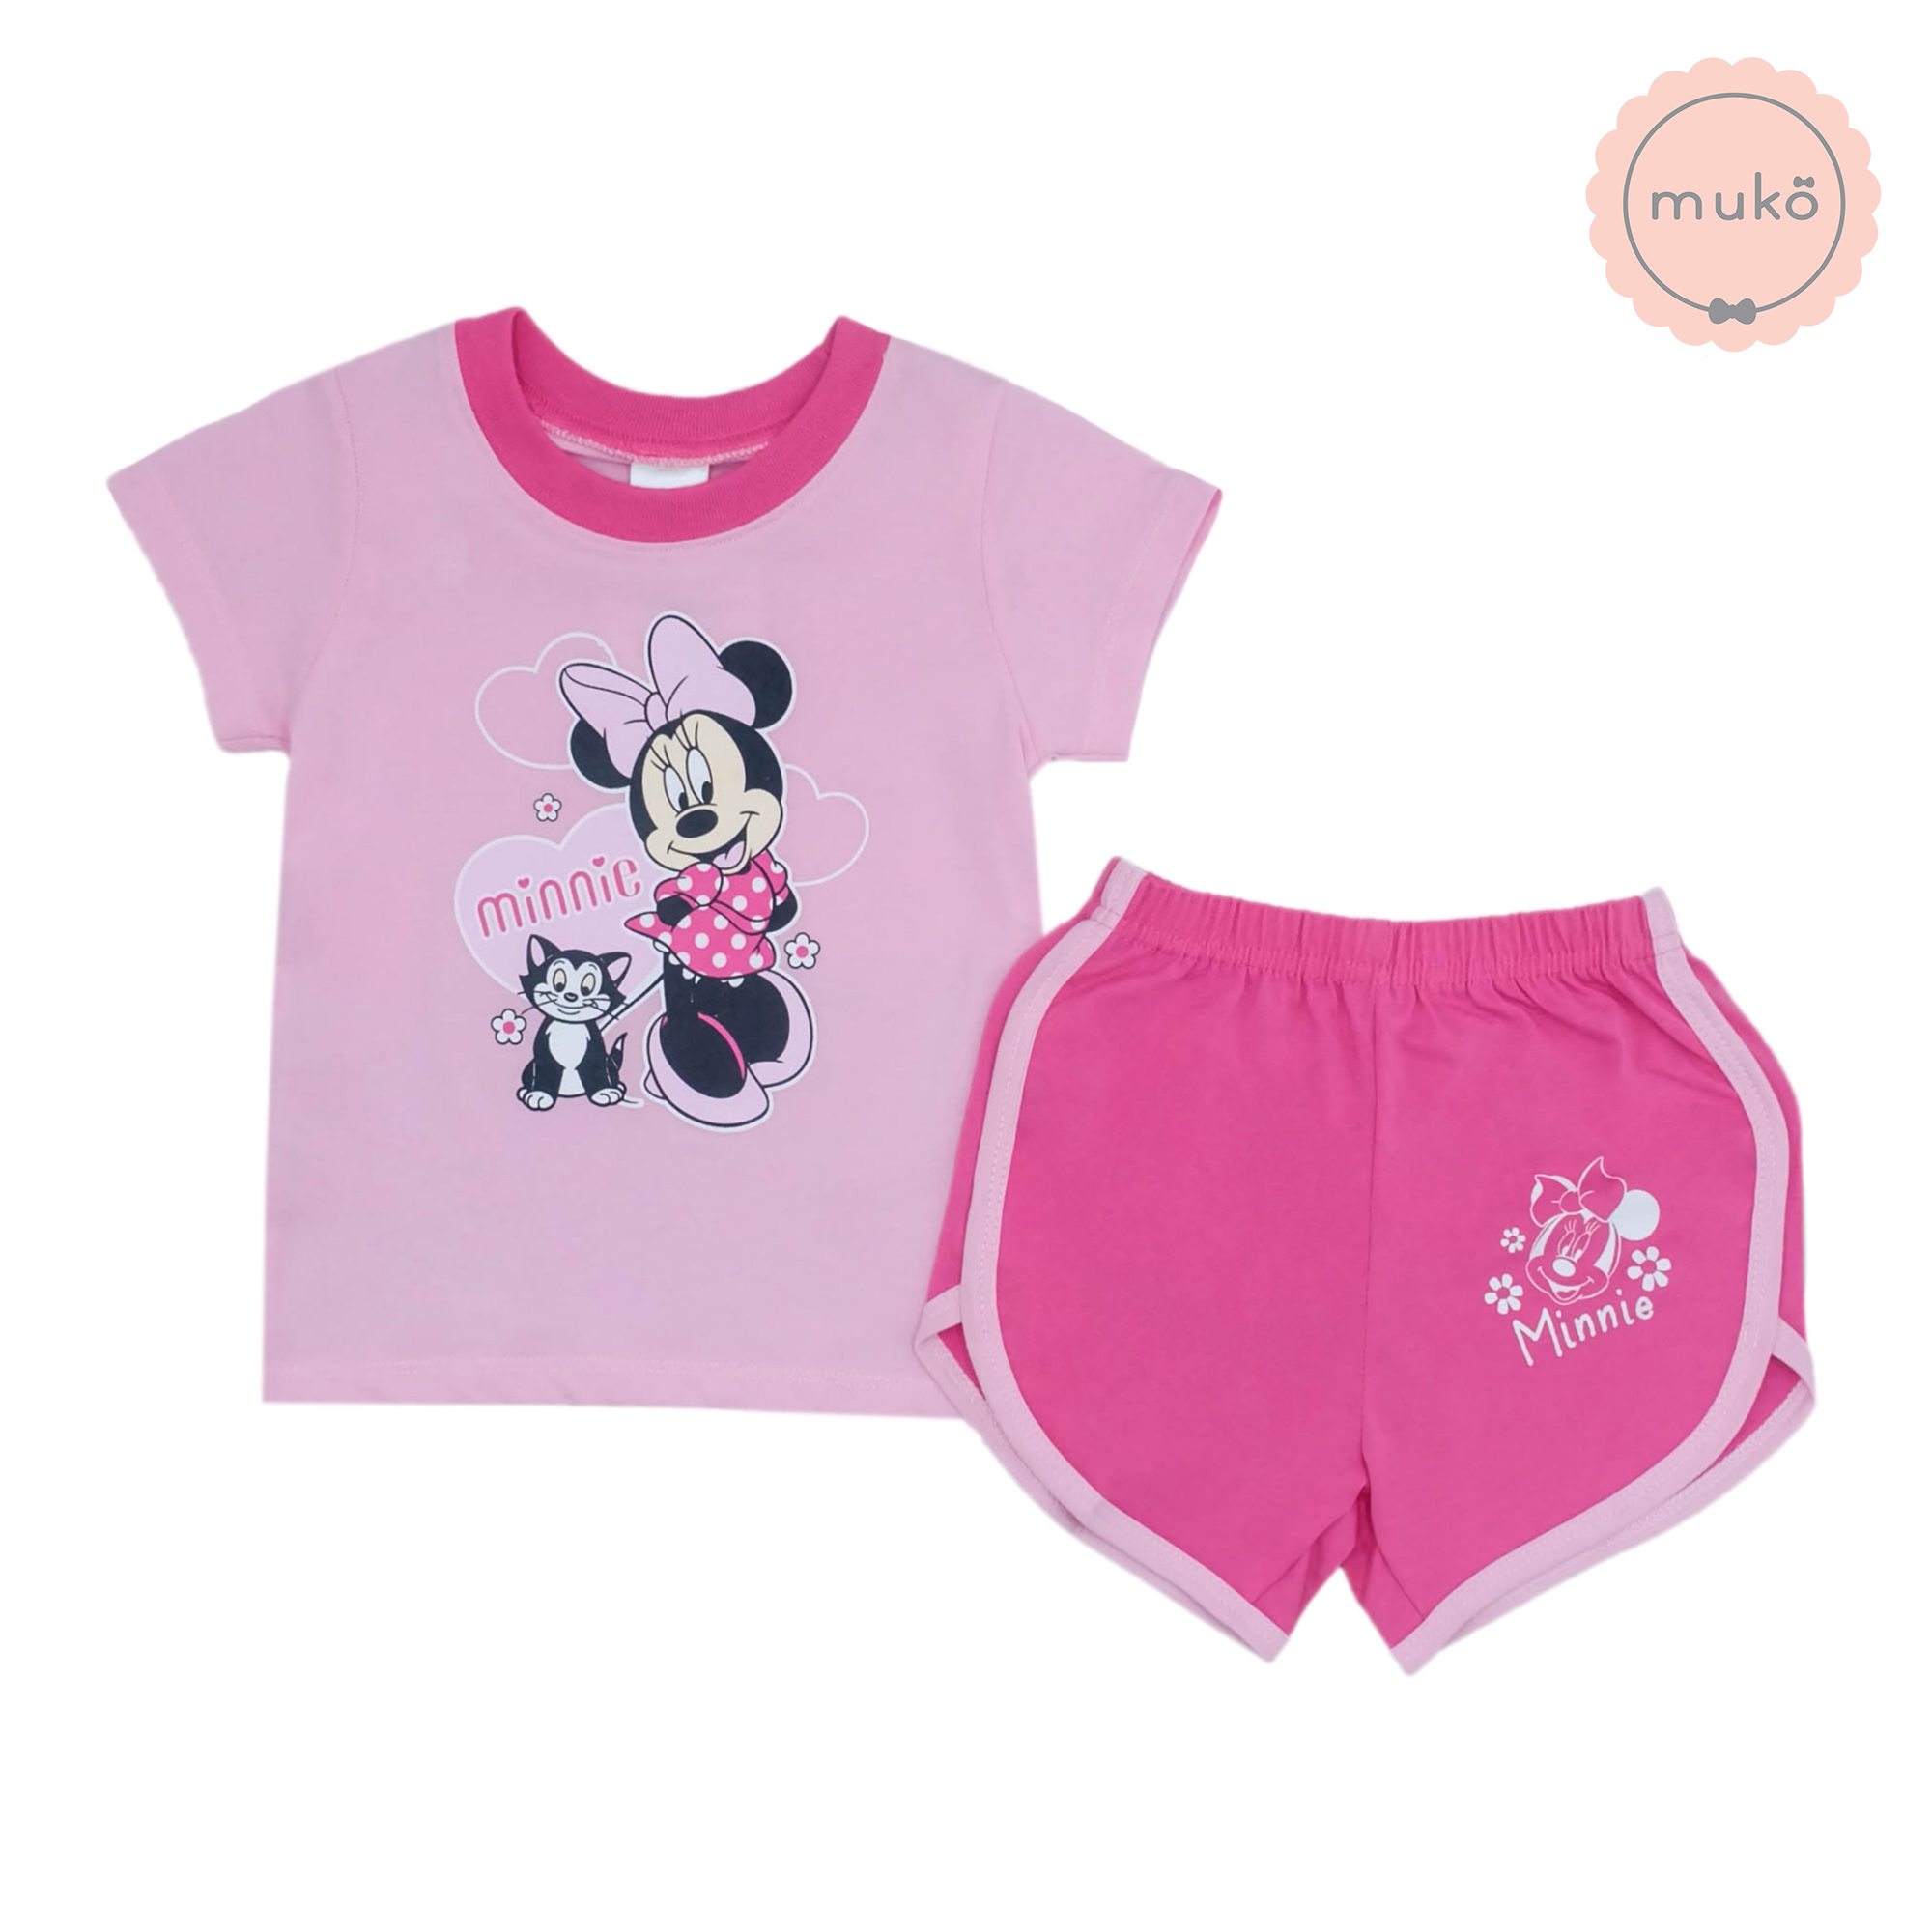 ชุดเบบี้ 3-6 เดือน แขนสั้น-ขาสั้น (S=70) DMK017-13-L-Pink S ลายมินนี่ เมาส์ Minnie Mouse